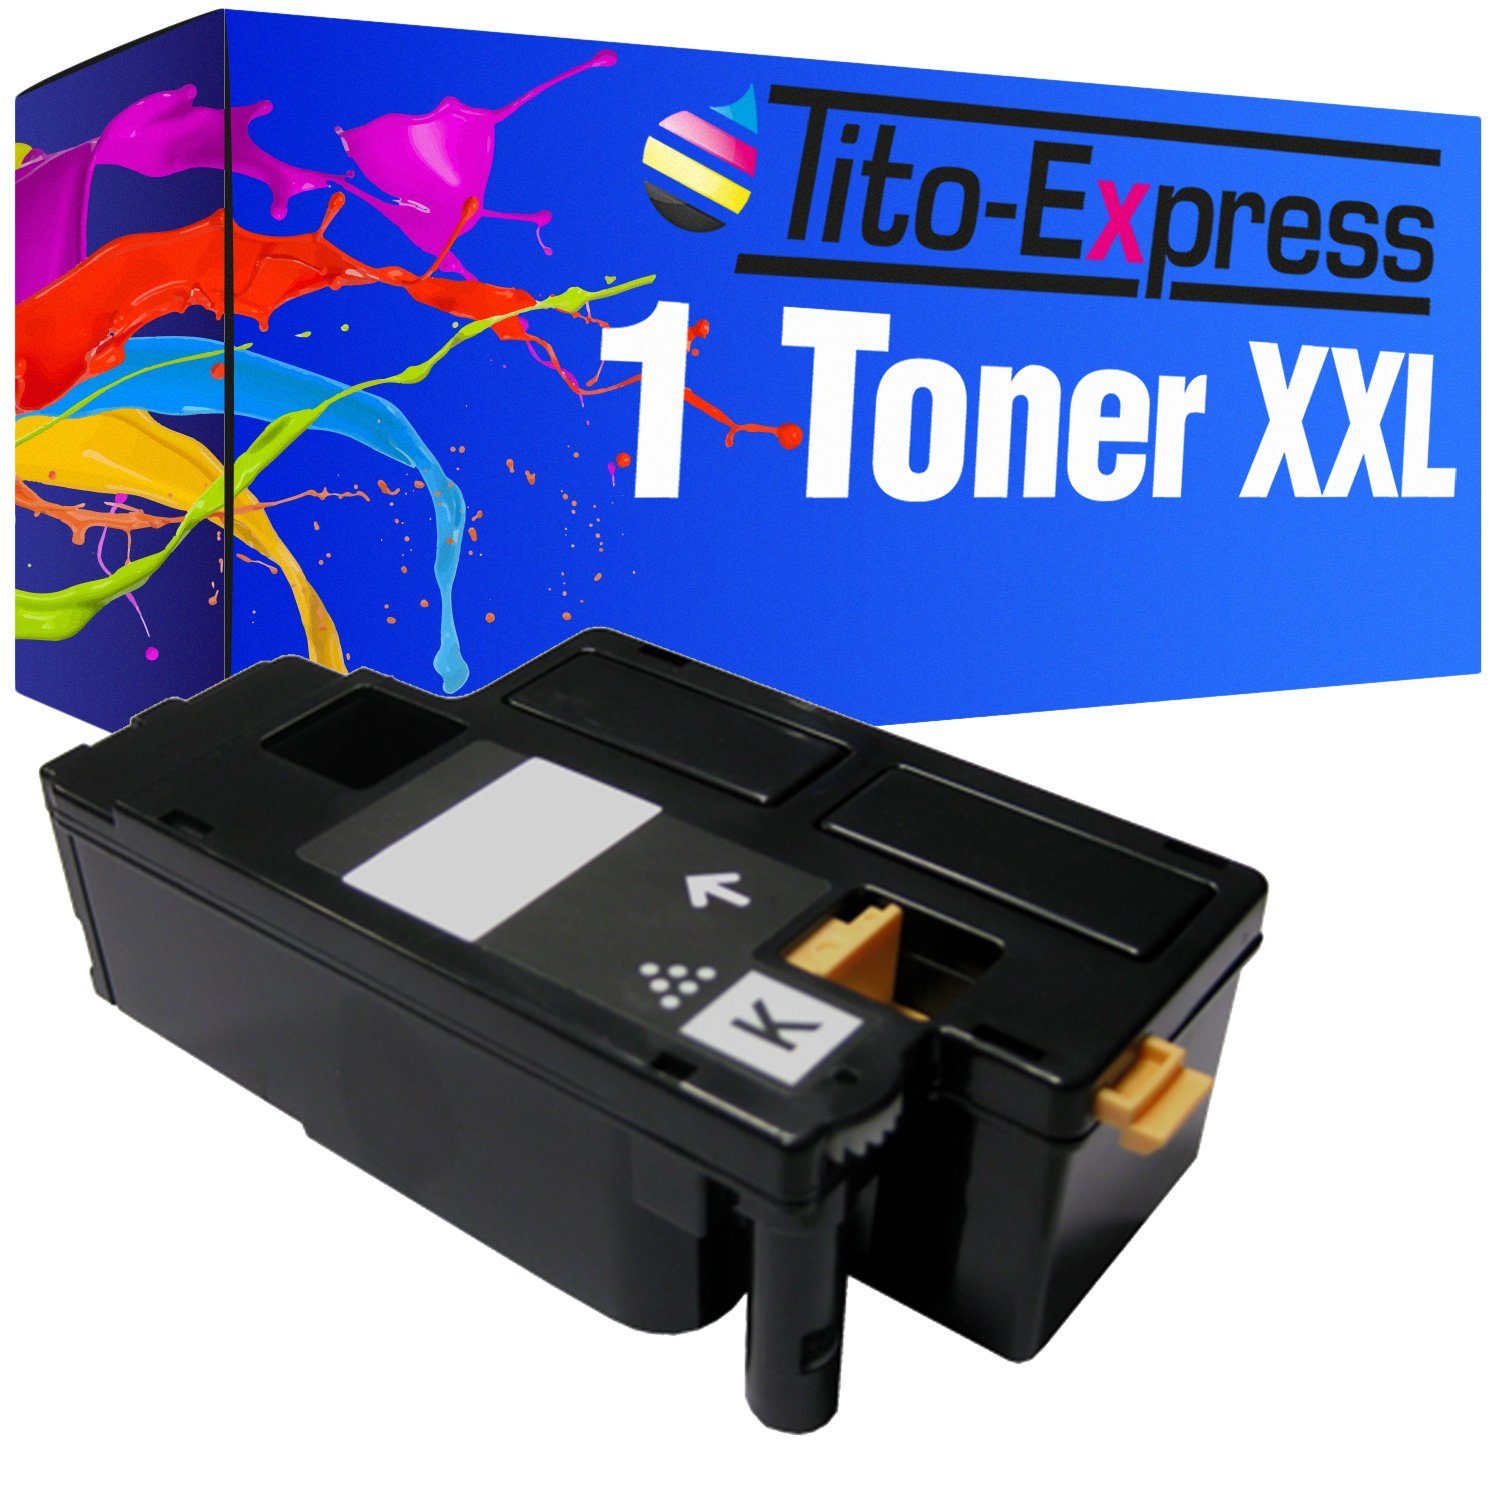 Tito-Express Tonerpatrone ersetzt Epson C 1700 C-1700 EpsonC1700 Epson C1700 Black, für Aculaser C1700 C1700 Series CX17 CX17NF CX17WF C1750N C1750W